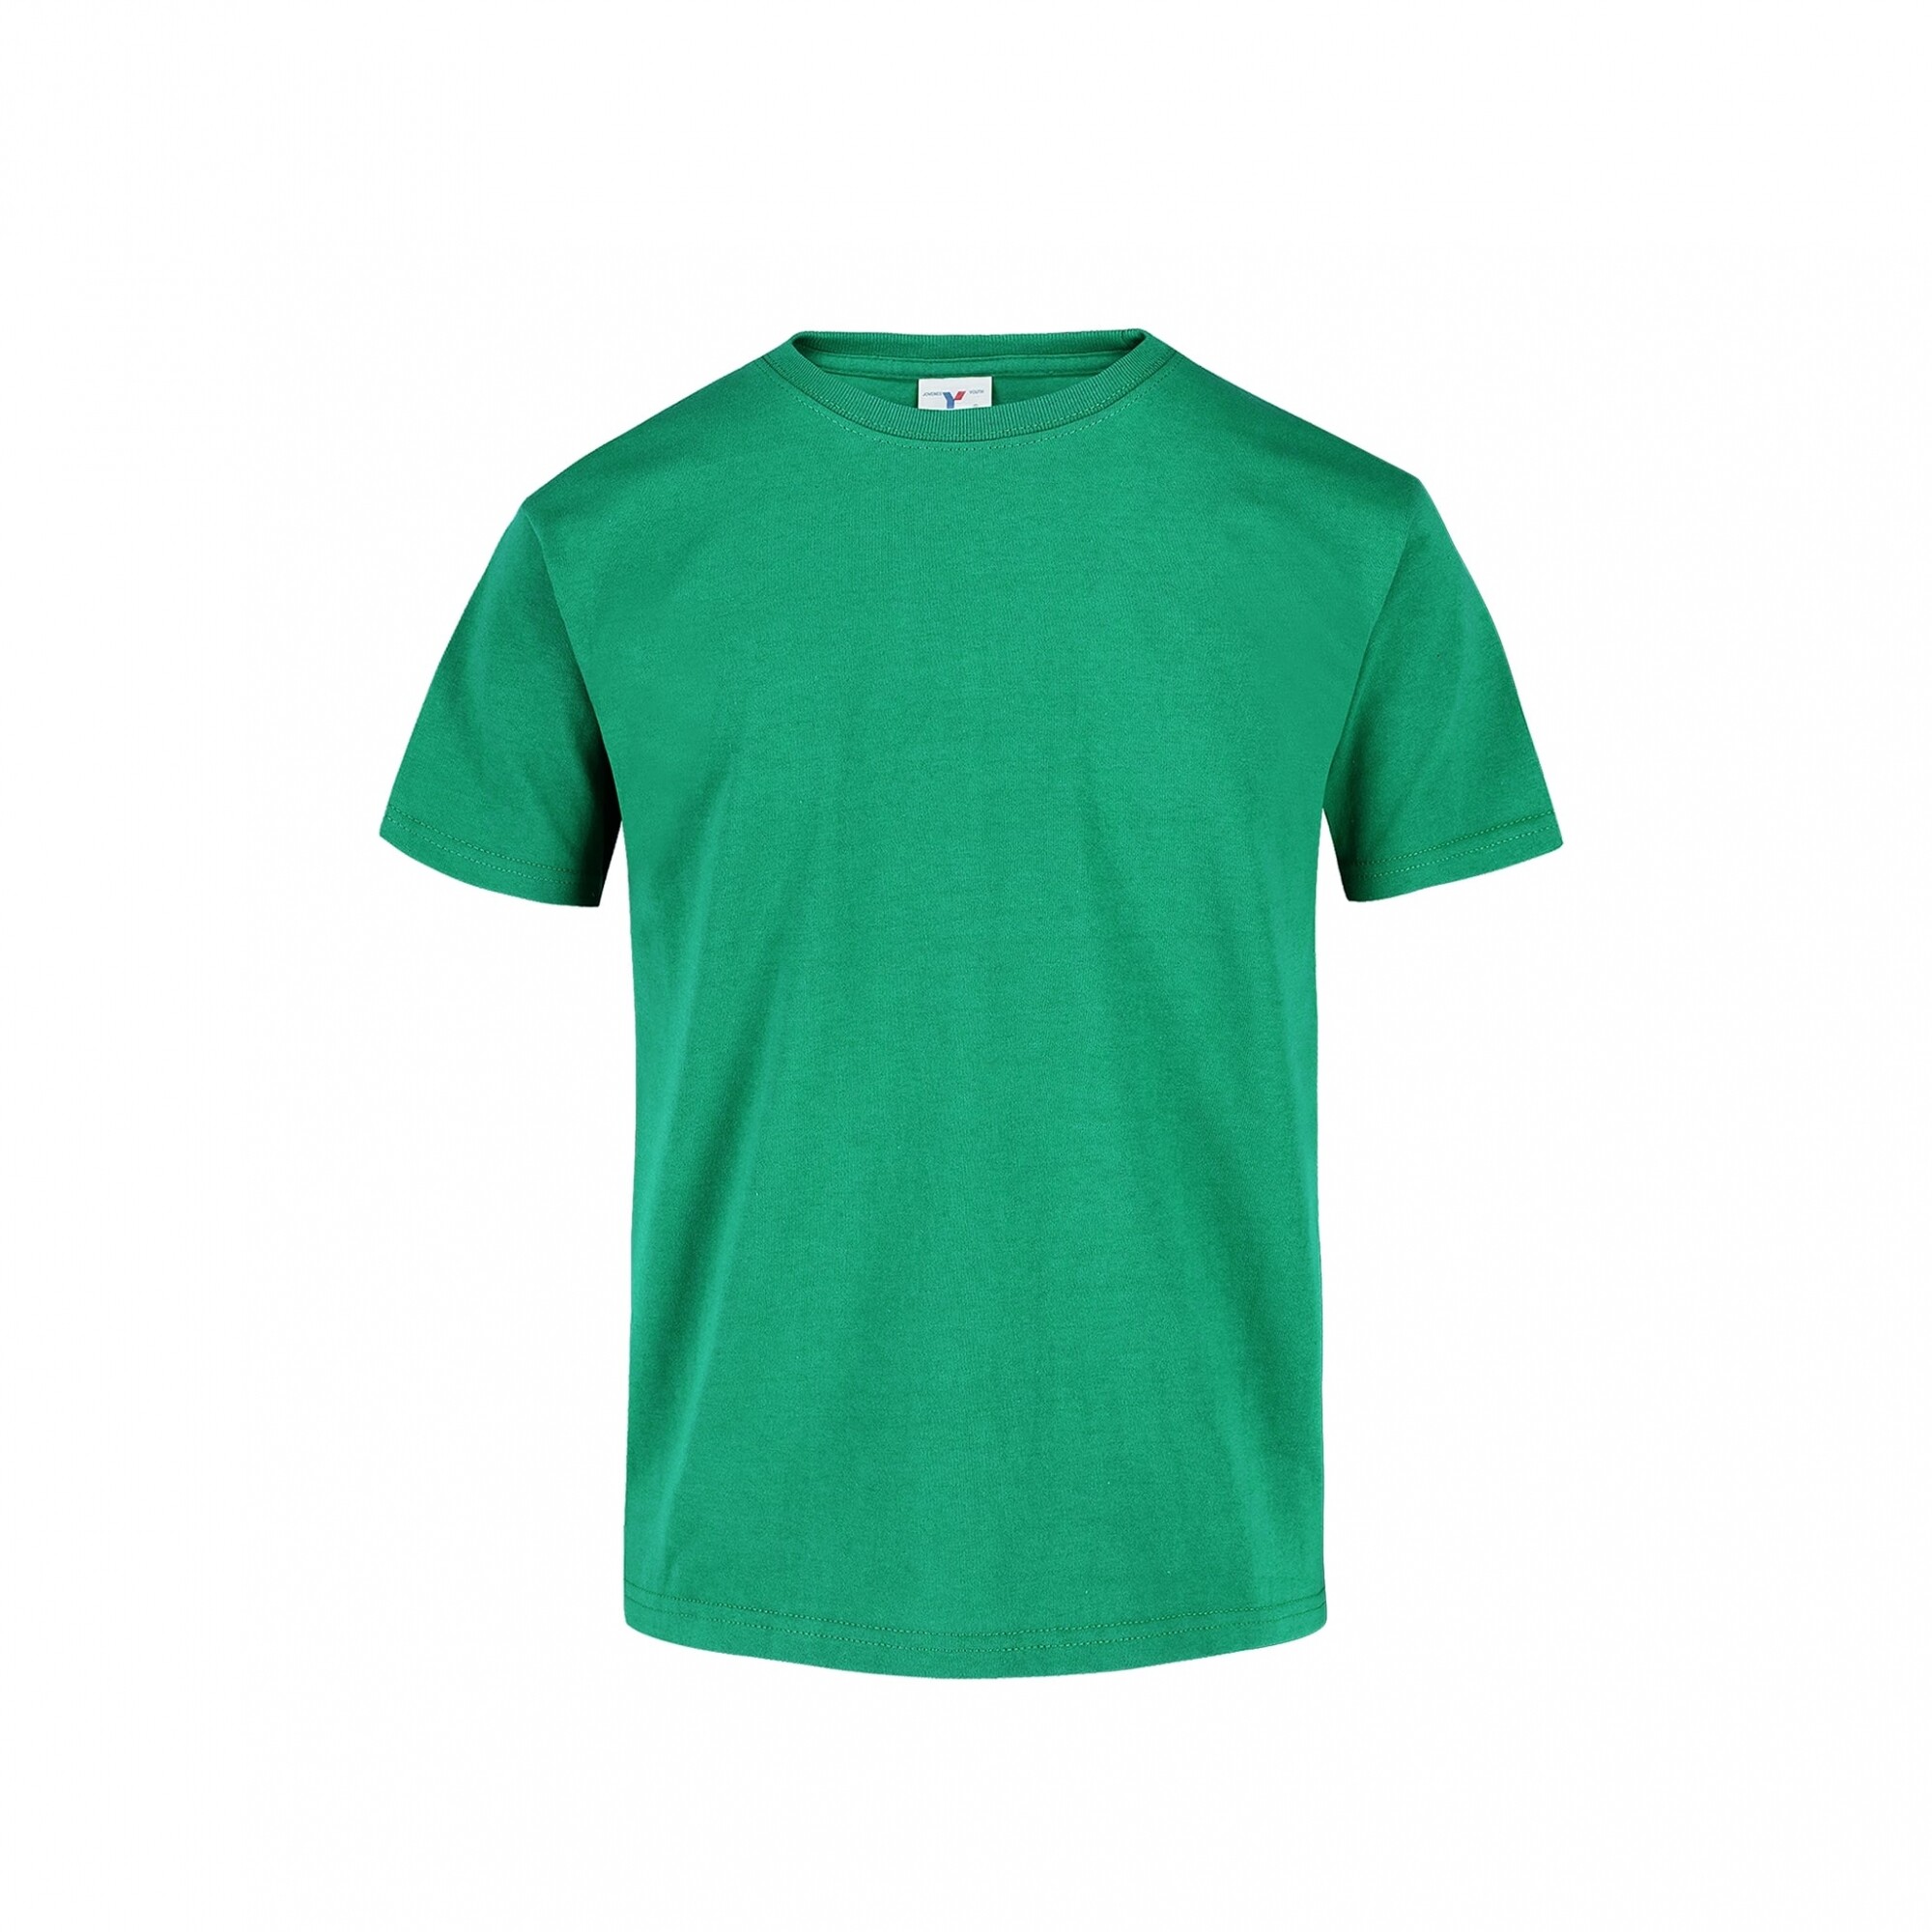 Camisa algodón mujer, color verde Talla L Color JADE GREEN